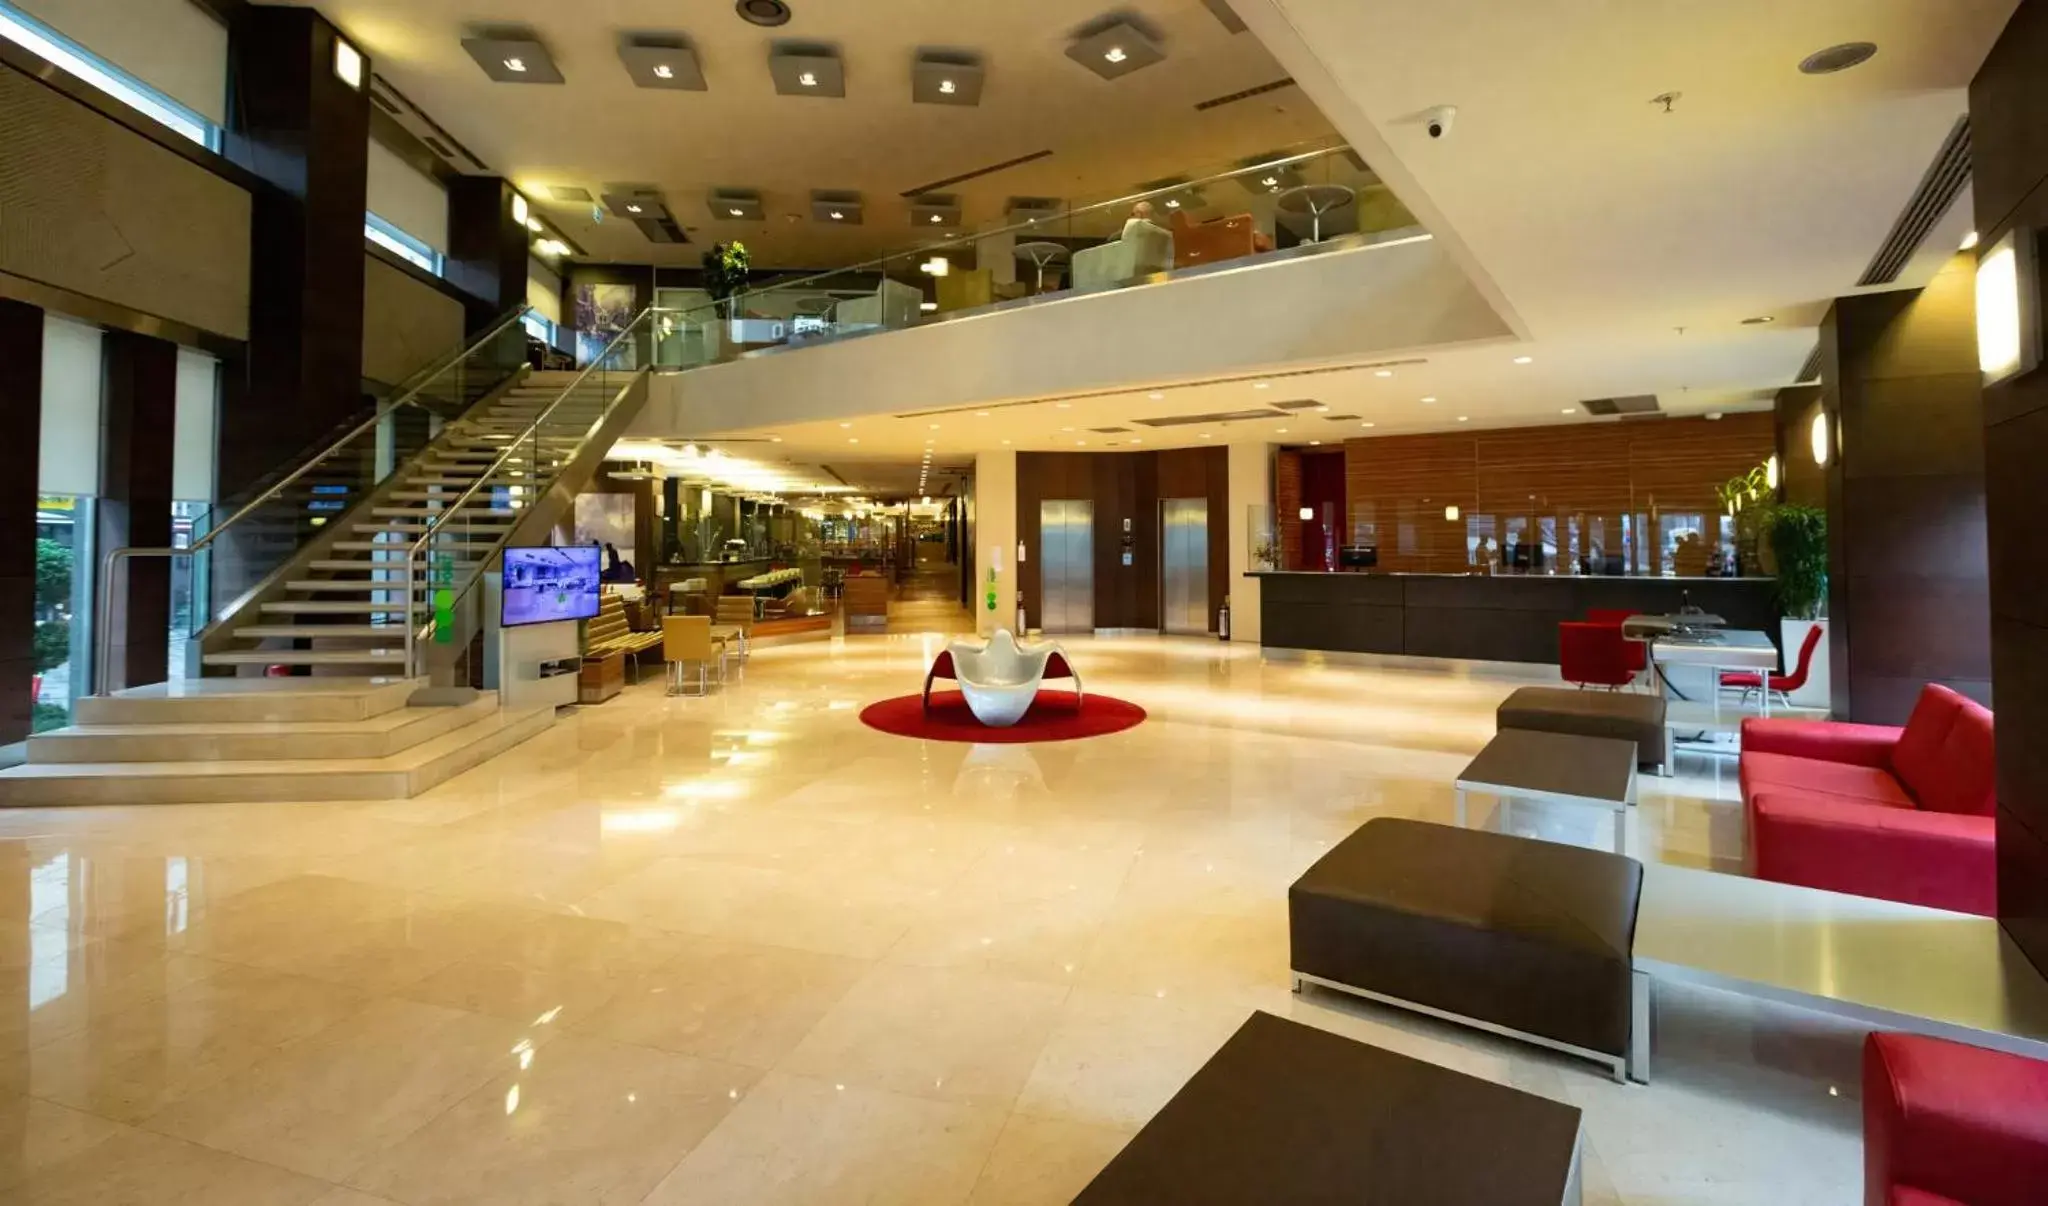 Lobby or reception, Lobby/Reception in Point Hotel Taksim